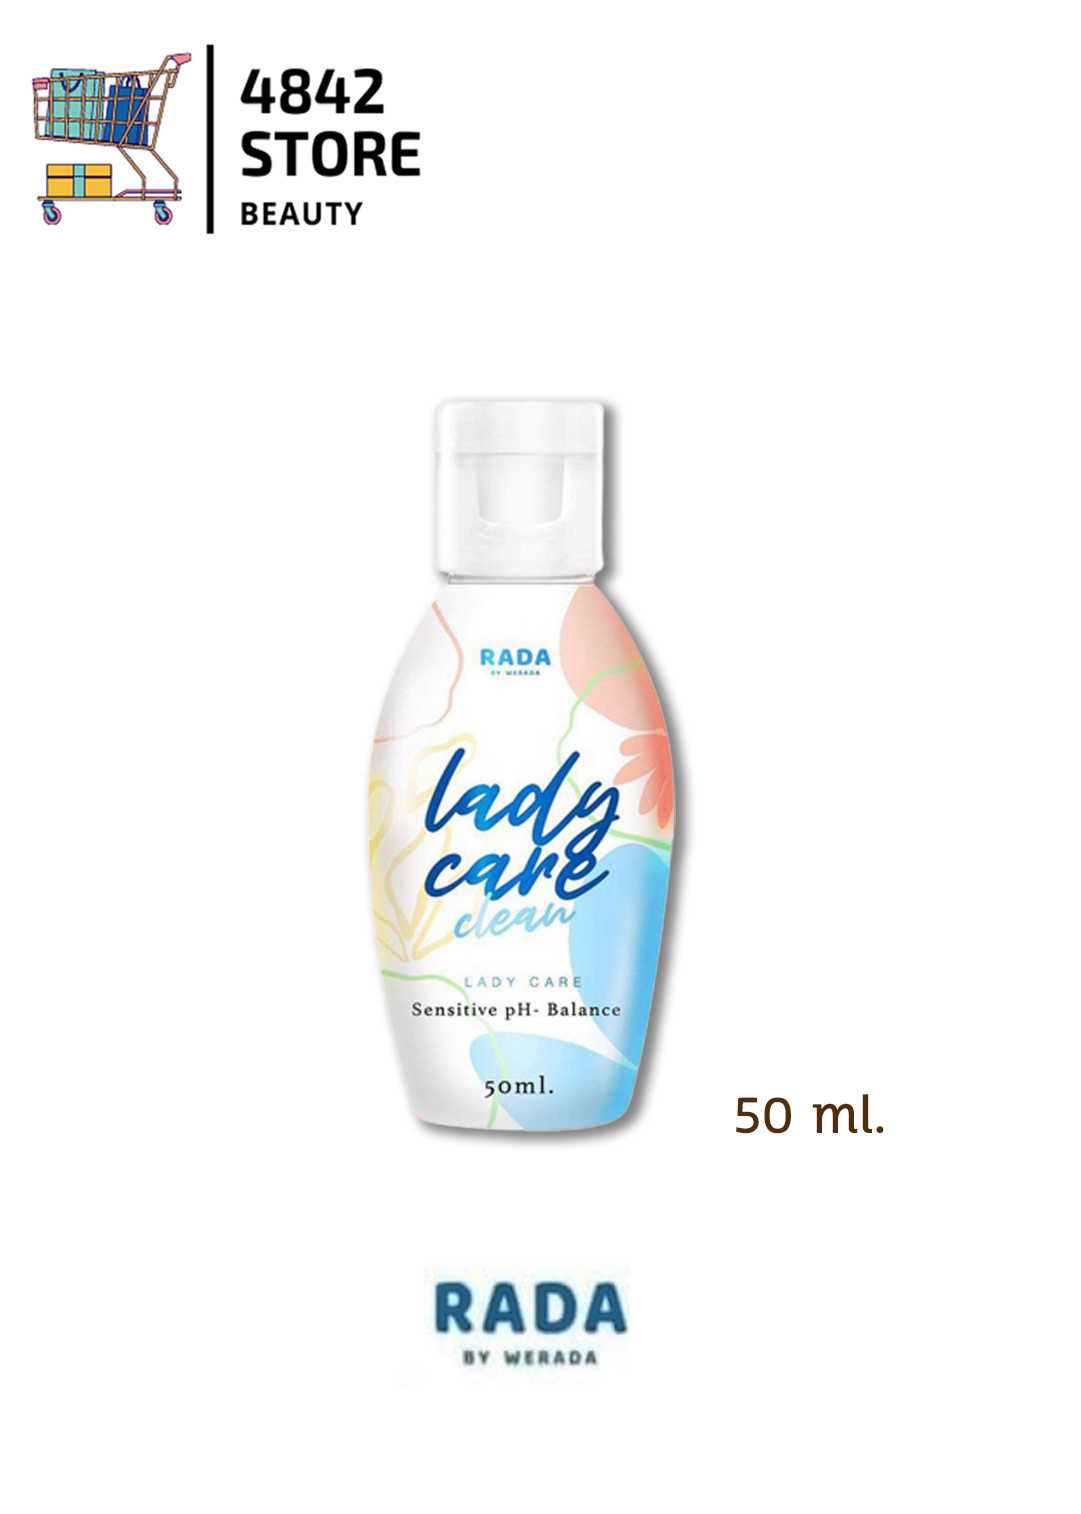 เลดี้แคร์ คลีน น้ำยาอนามัย ล้างจุดซ่อนเล้น Lady care by rada 50 ml. -  4842Store - ThaiPick